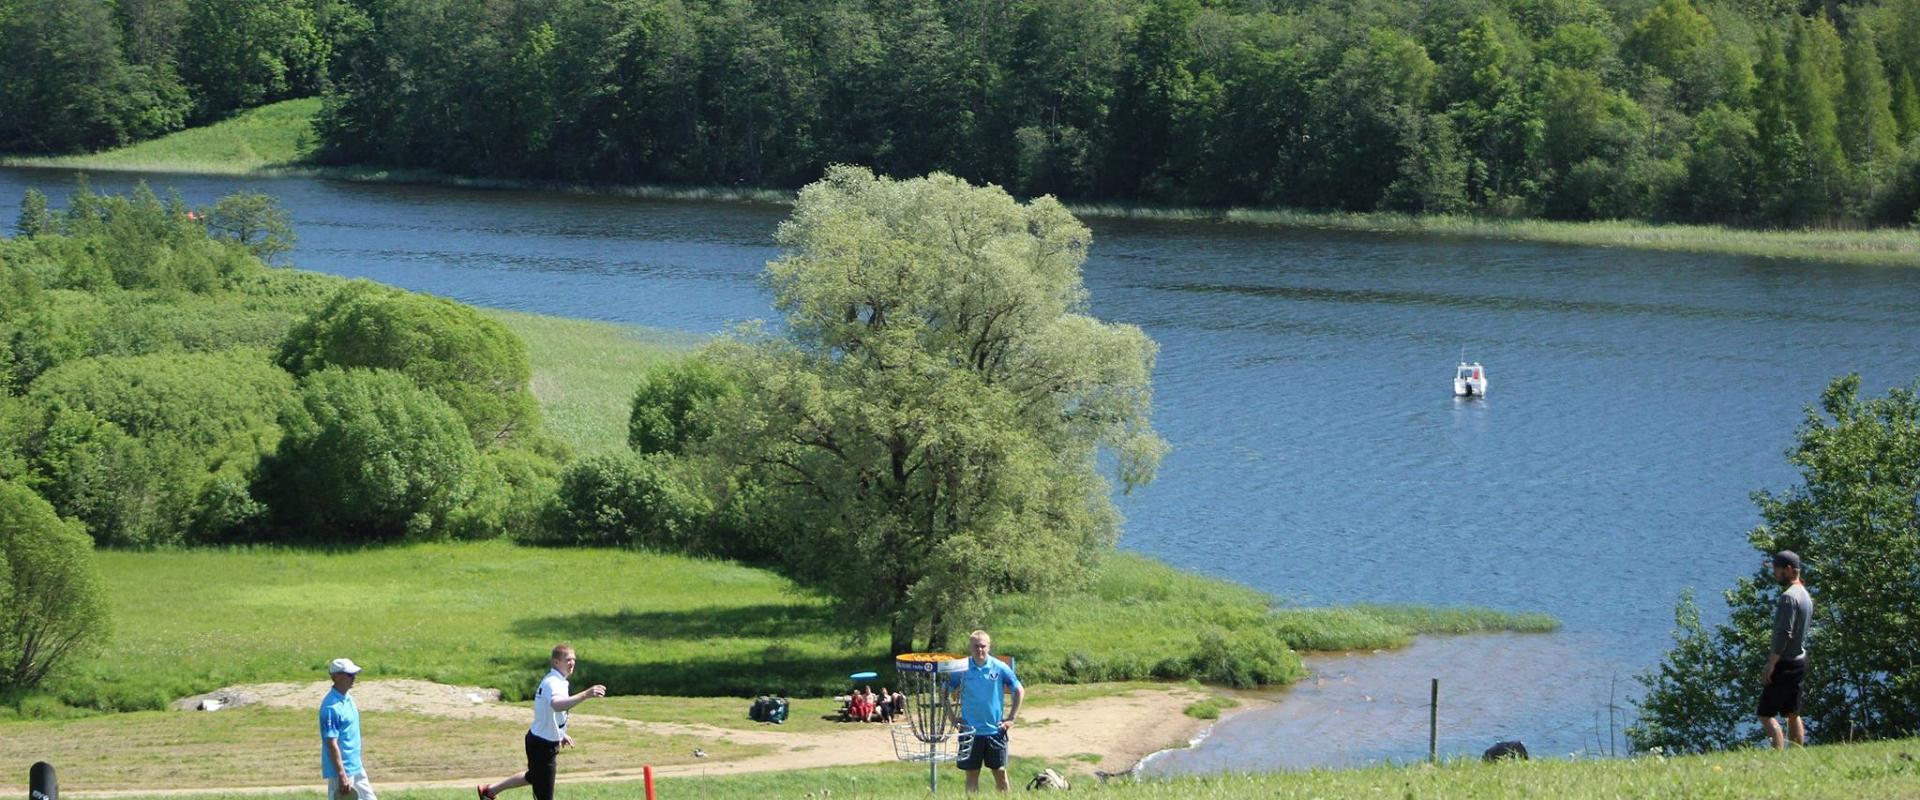 Viljandi Rotary Disku golfa parks